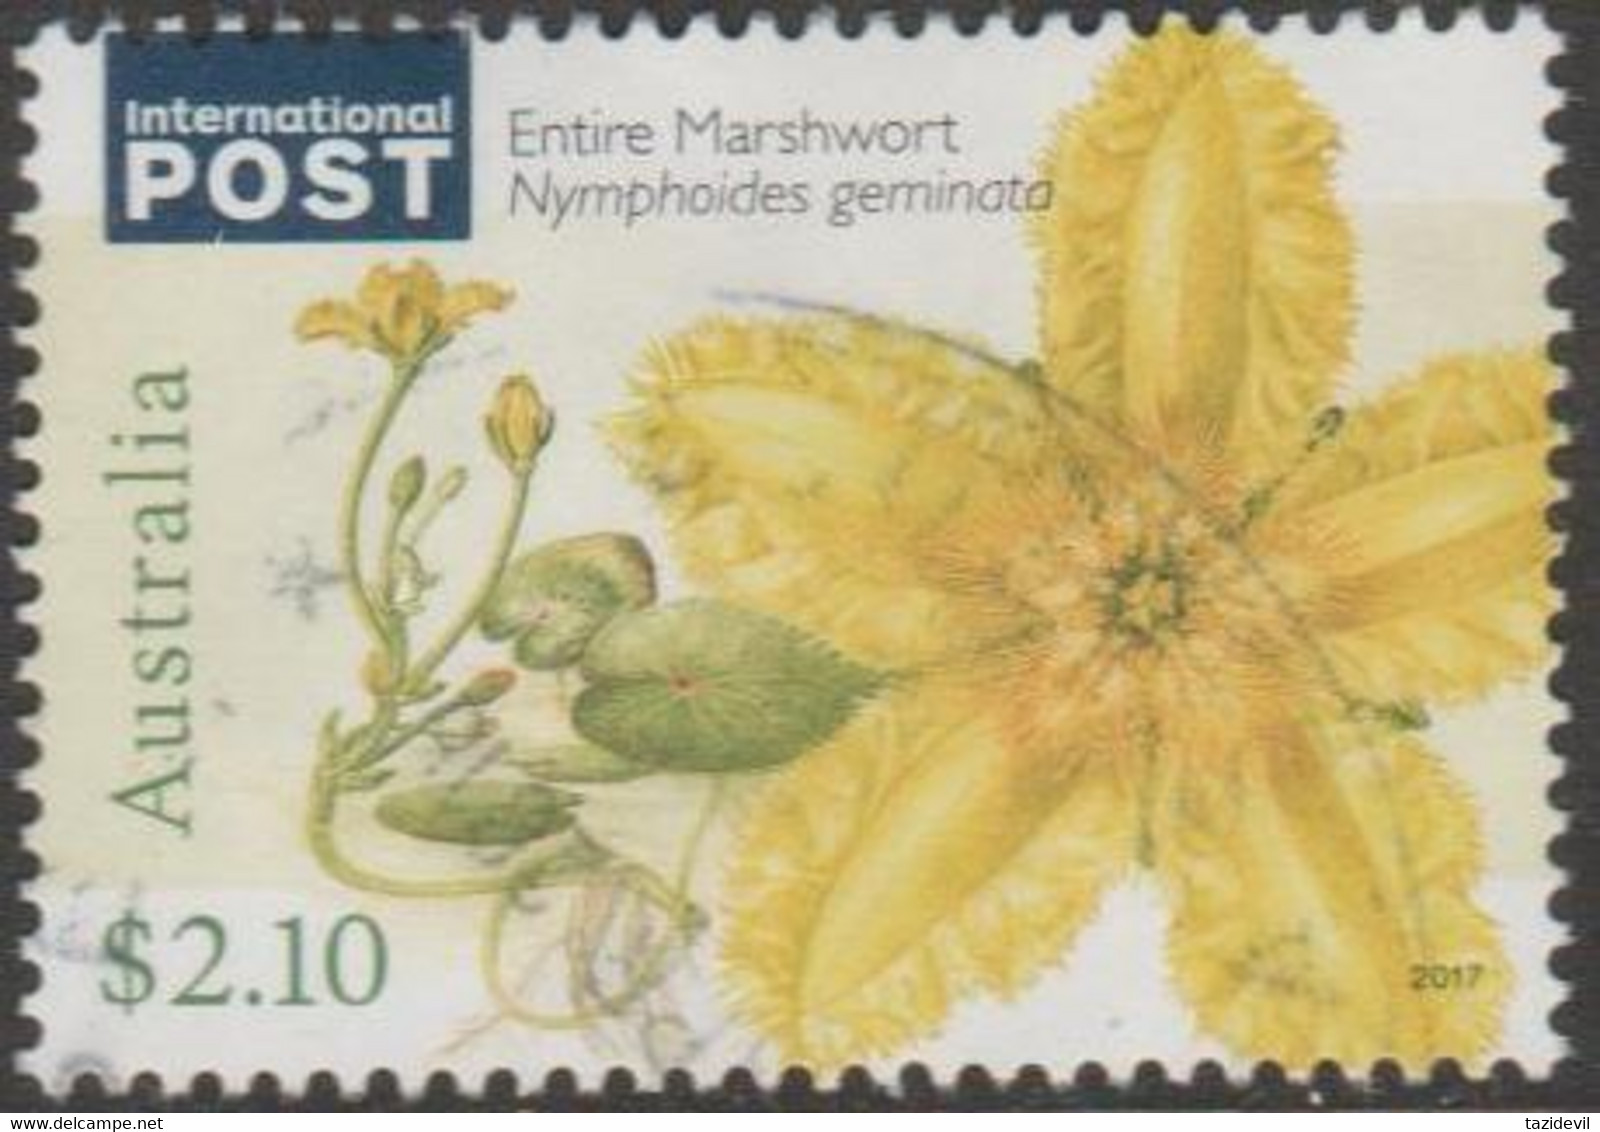 AUSTRALIA - USED 2017 $2.10 Waterplants, International - Entire Marshwort - Used Stamps